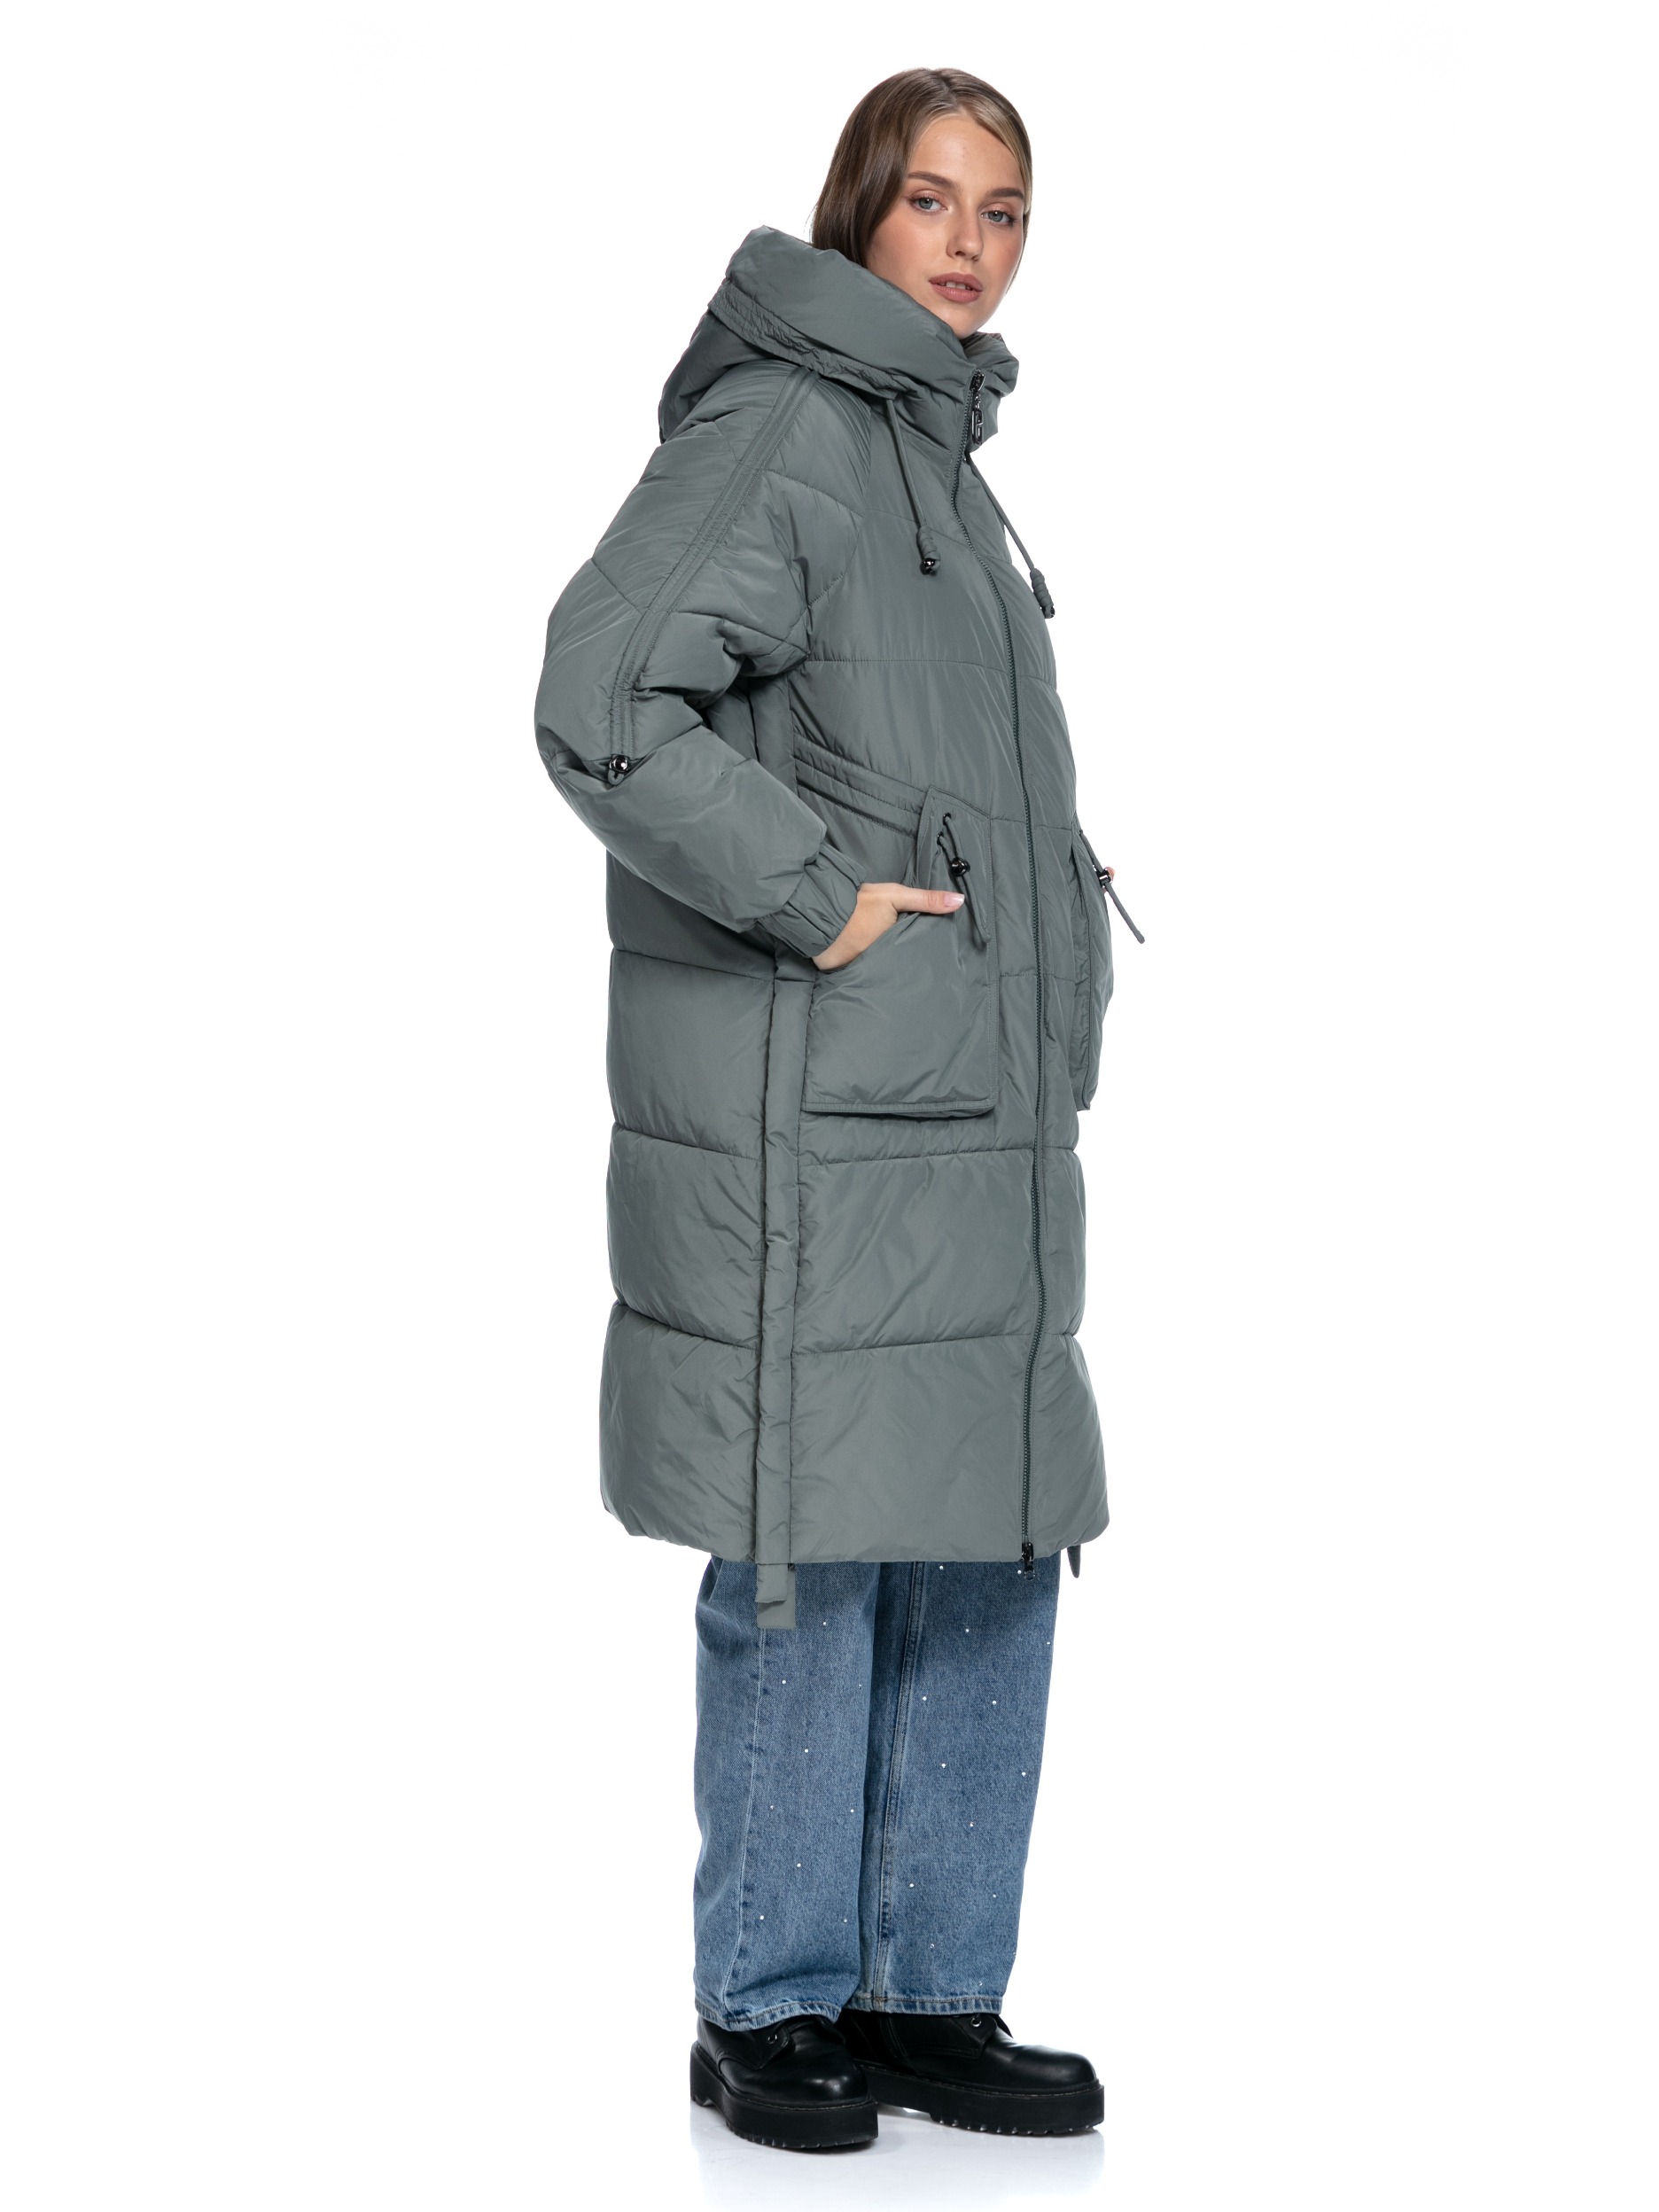 Текстильное зимнее пальто на синтепоне с капюшоном